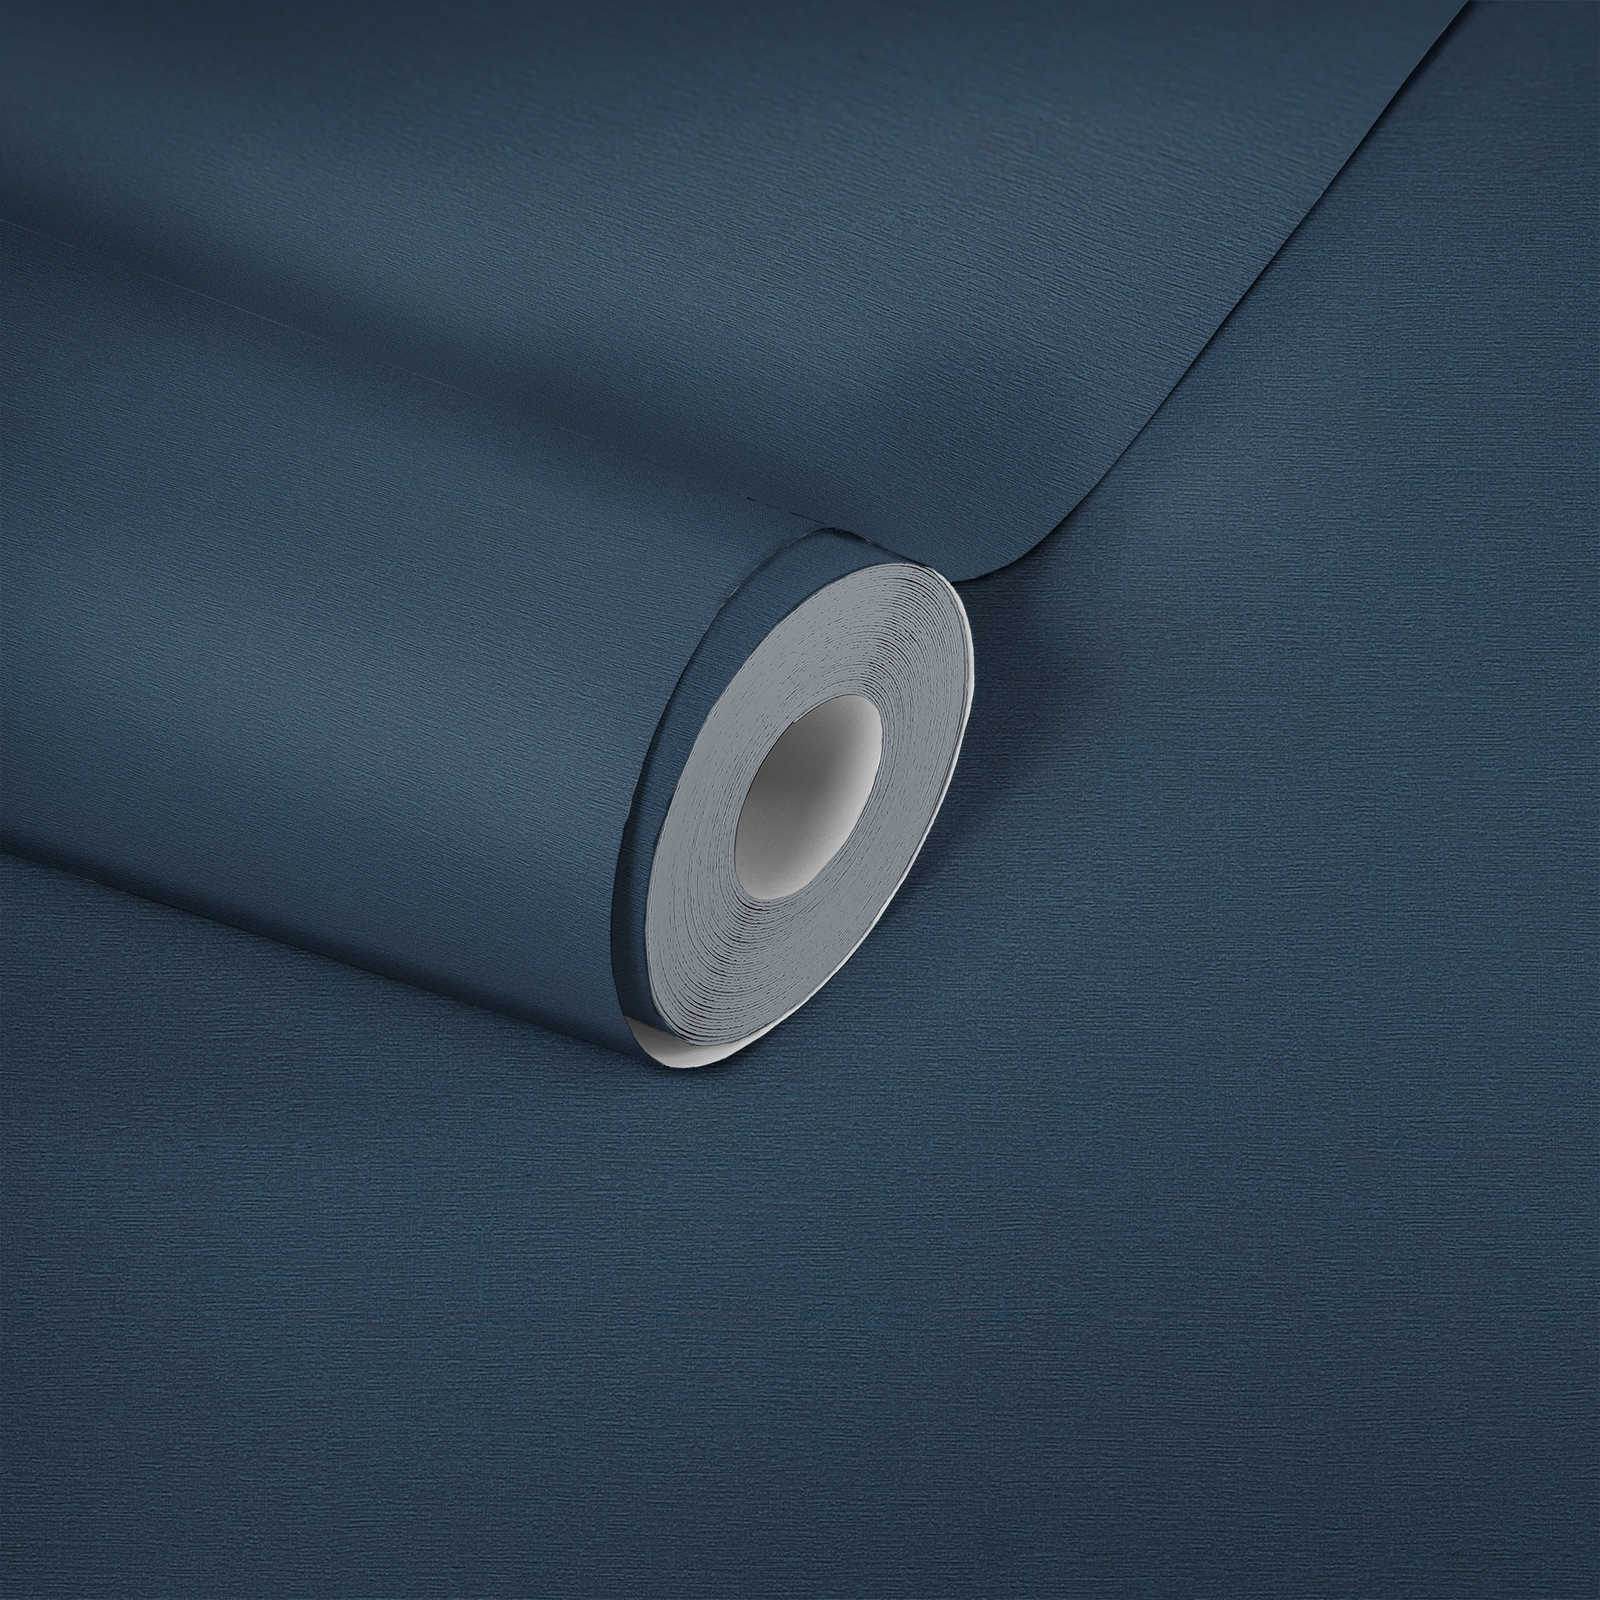             Papier peint foncé structure lin, uni & satiné - bleu
        